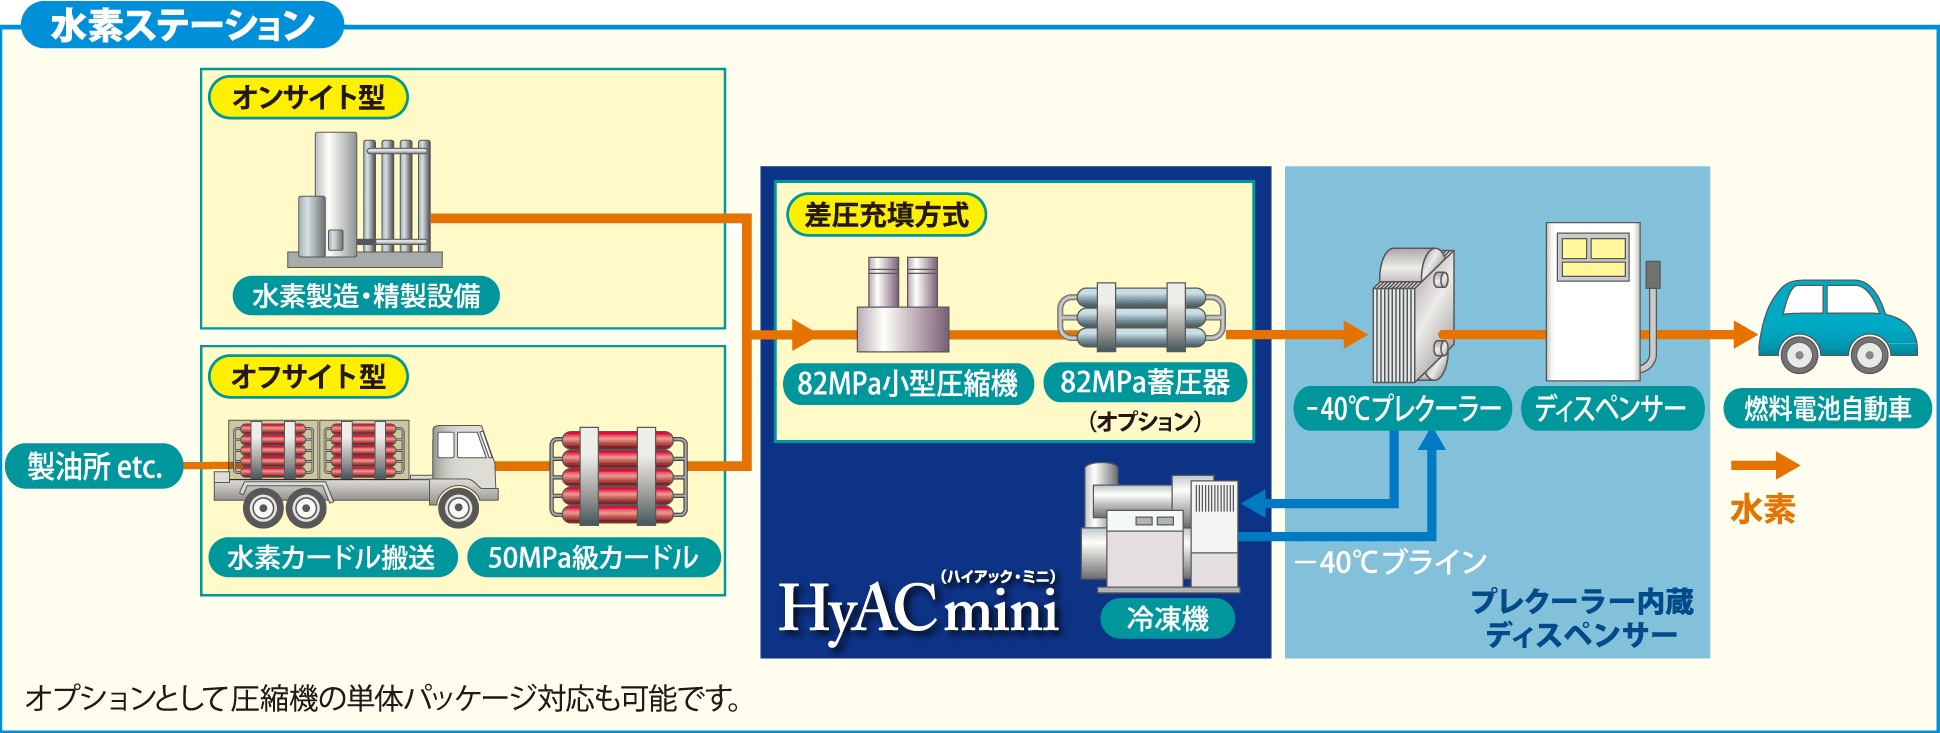 水素ステーション向けコンプレッサーユニット Hyacmini Kobelco 神戸製鋼